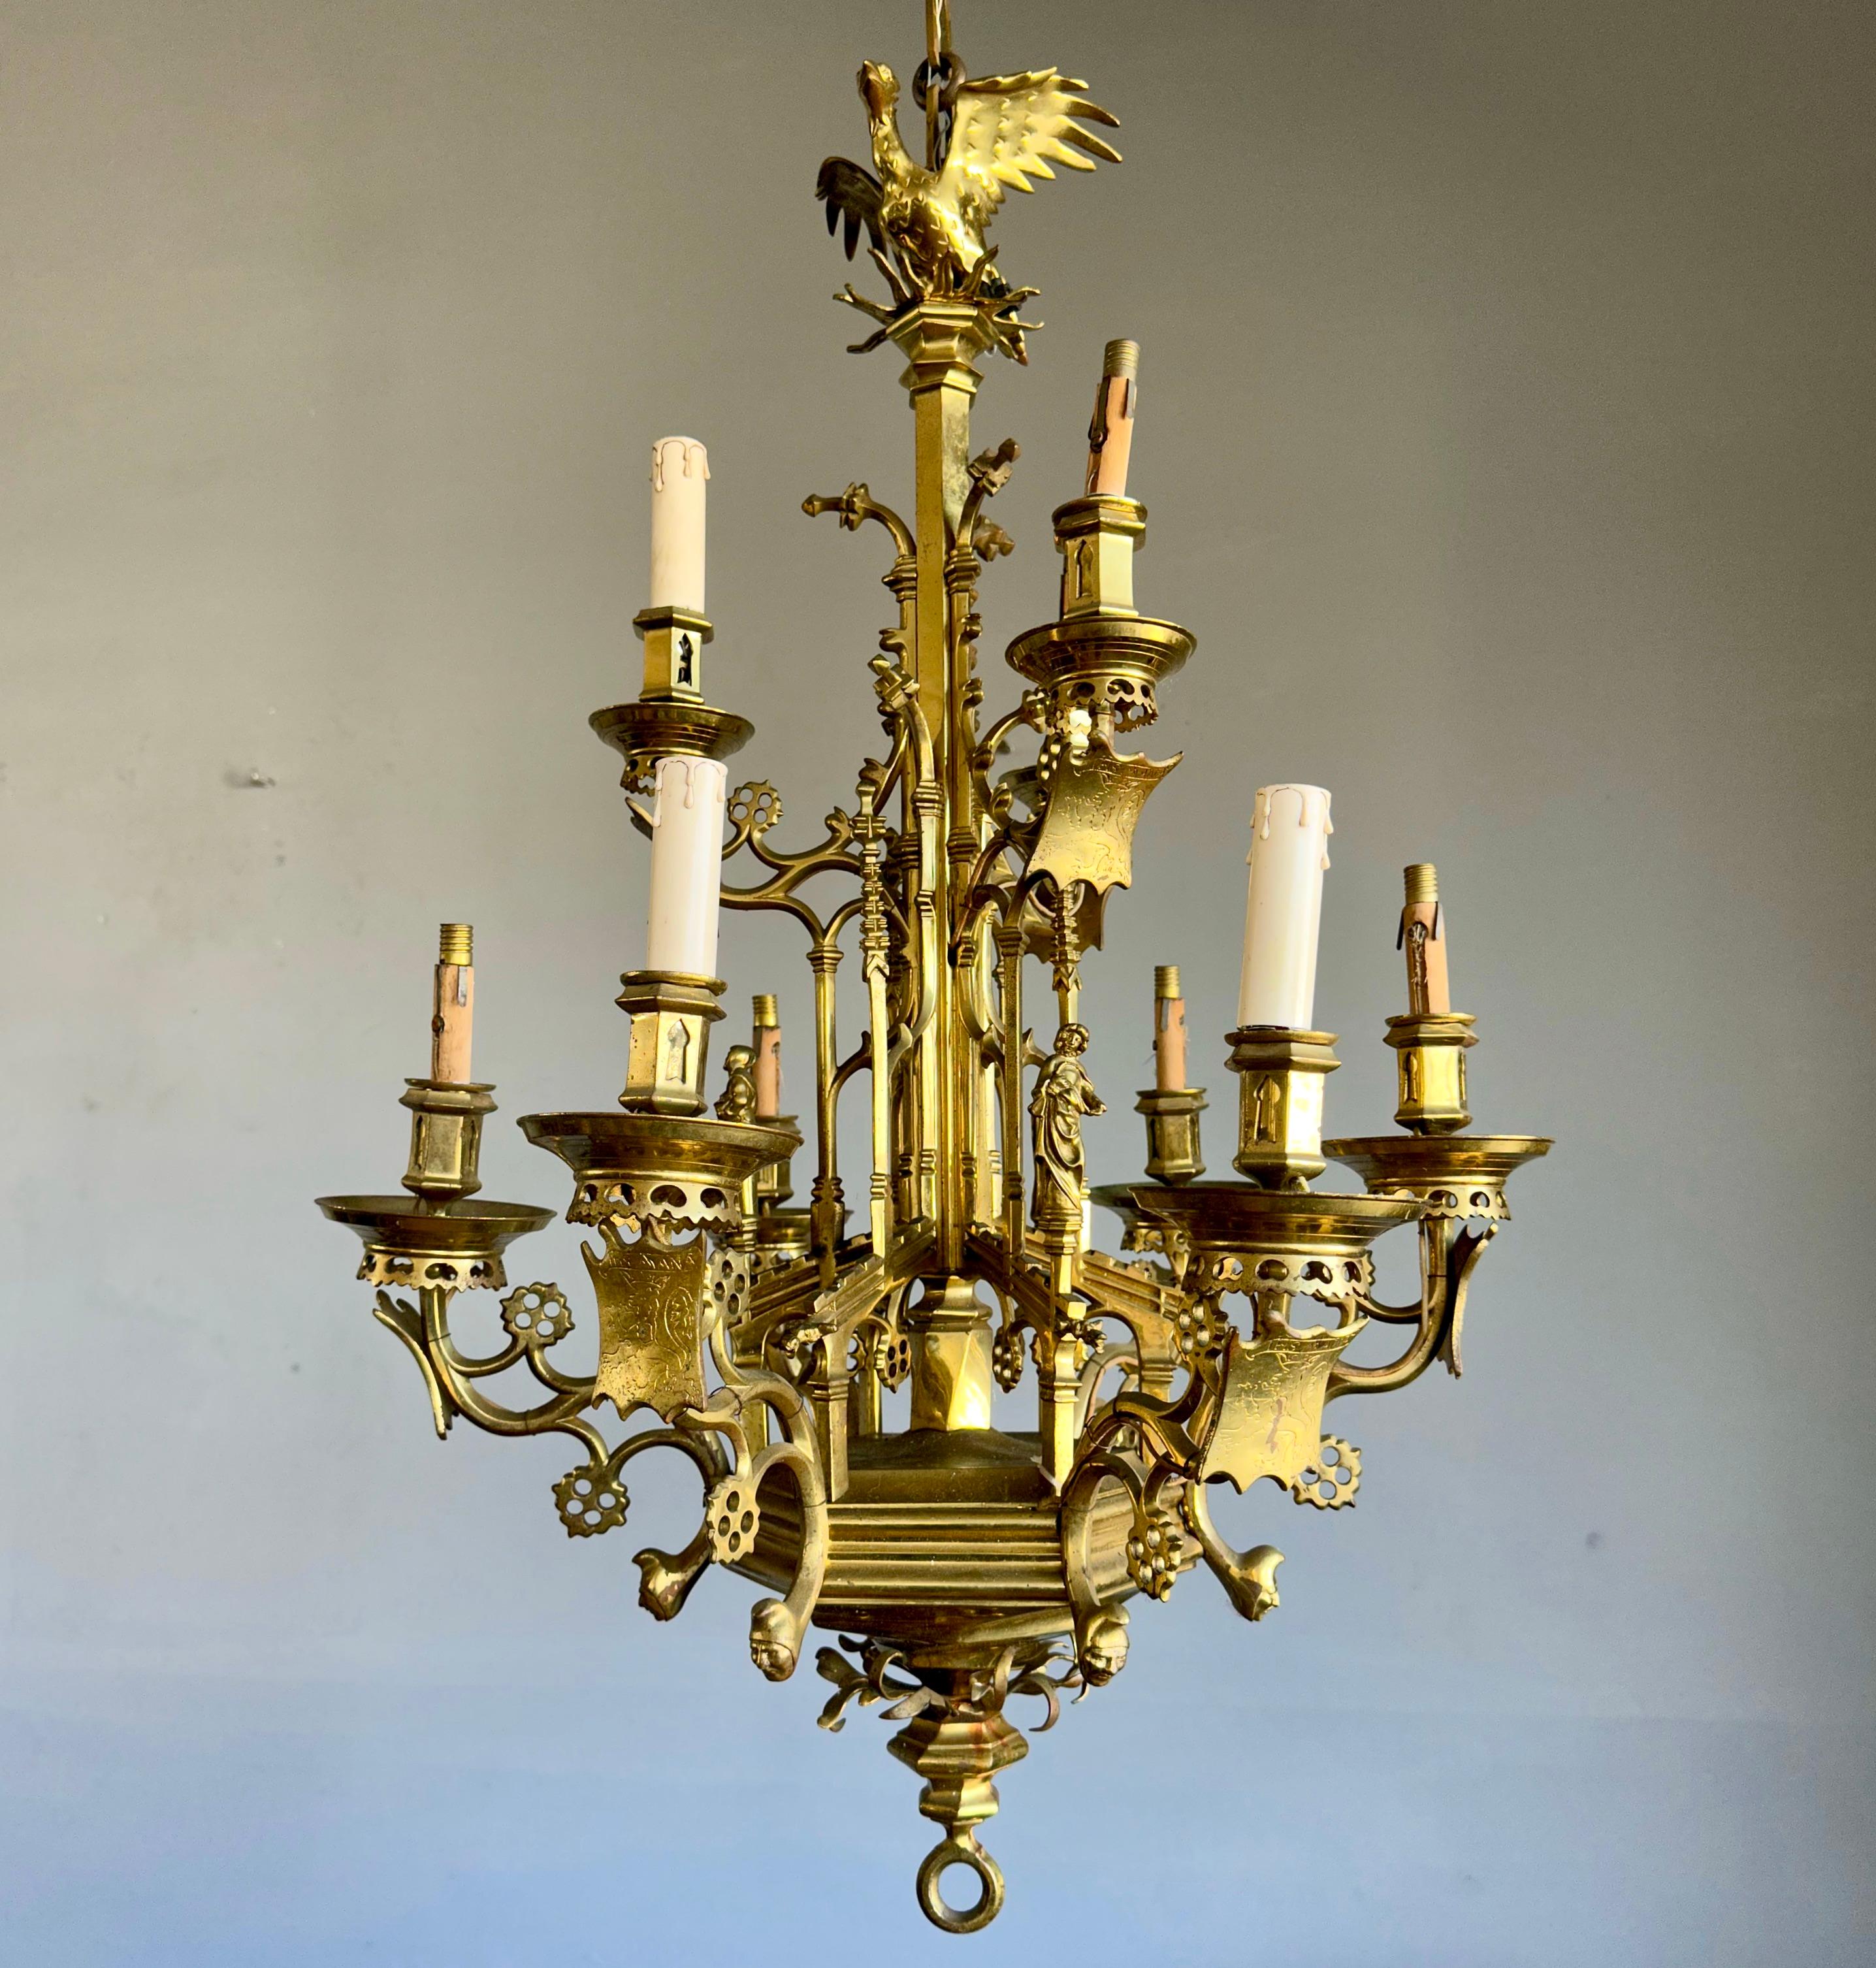 Handgefertigte und wirklich beeindruckende neugotische Leuchte, die auch für Kerzen verwendet werden kann.

Im Laufe der Jahrzehnte haben wir eine Reihe von sehr guten antiken, gotischen Bronzeleuchten für Kerzen und Glühbirnen verkauft. Allerdings